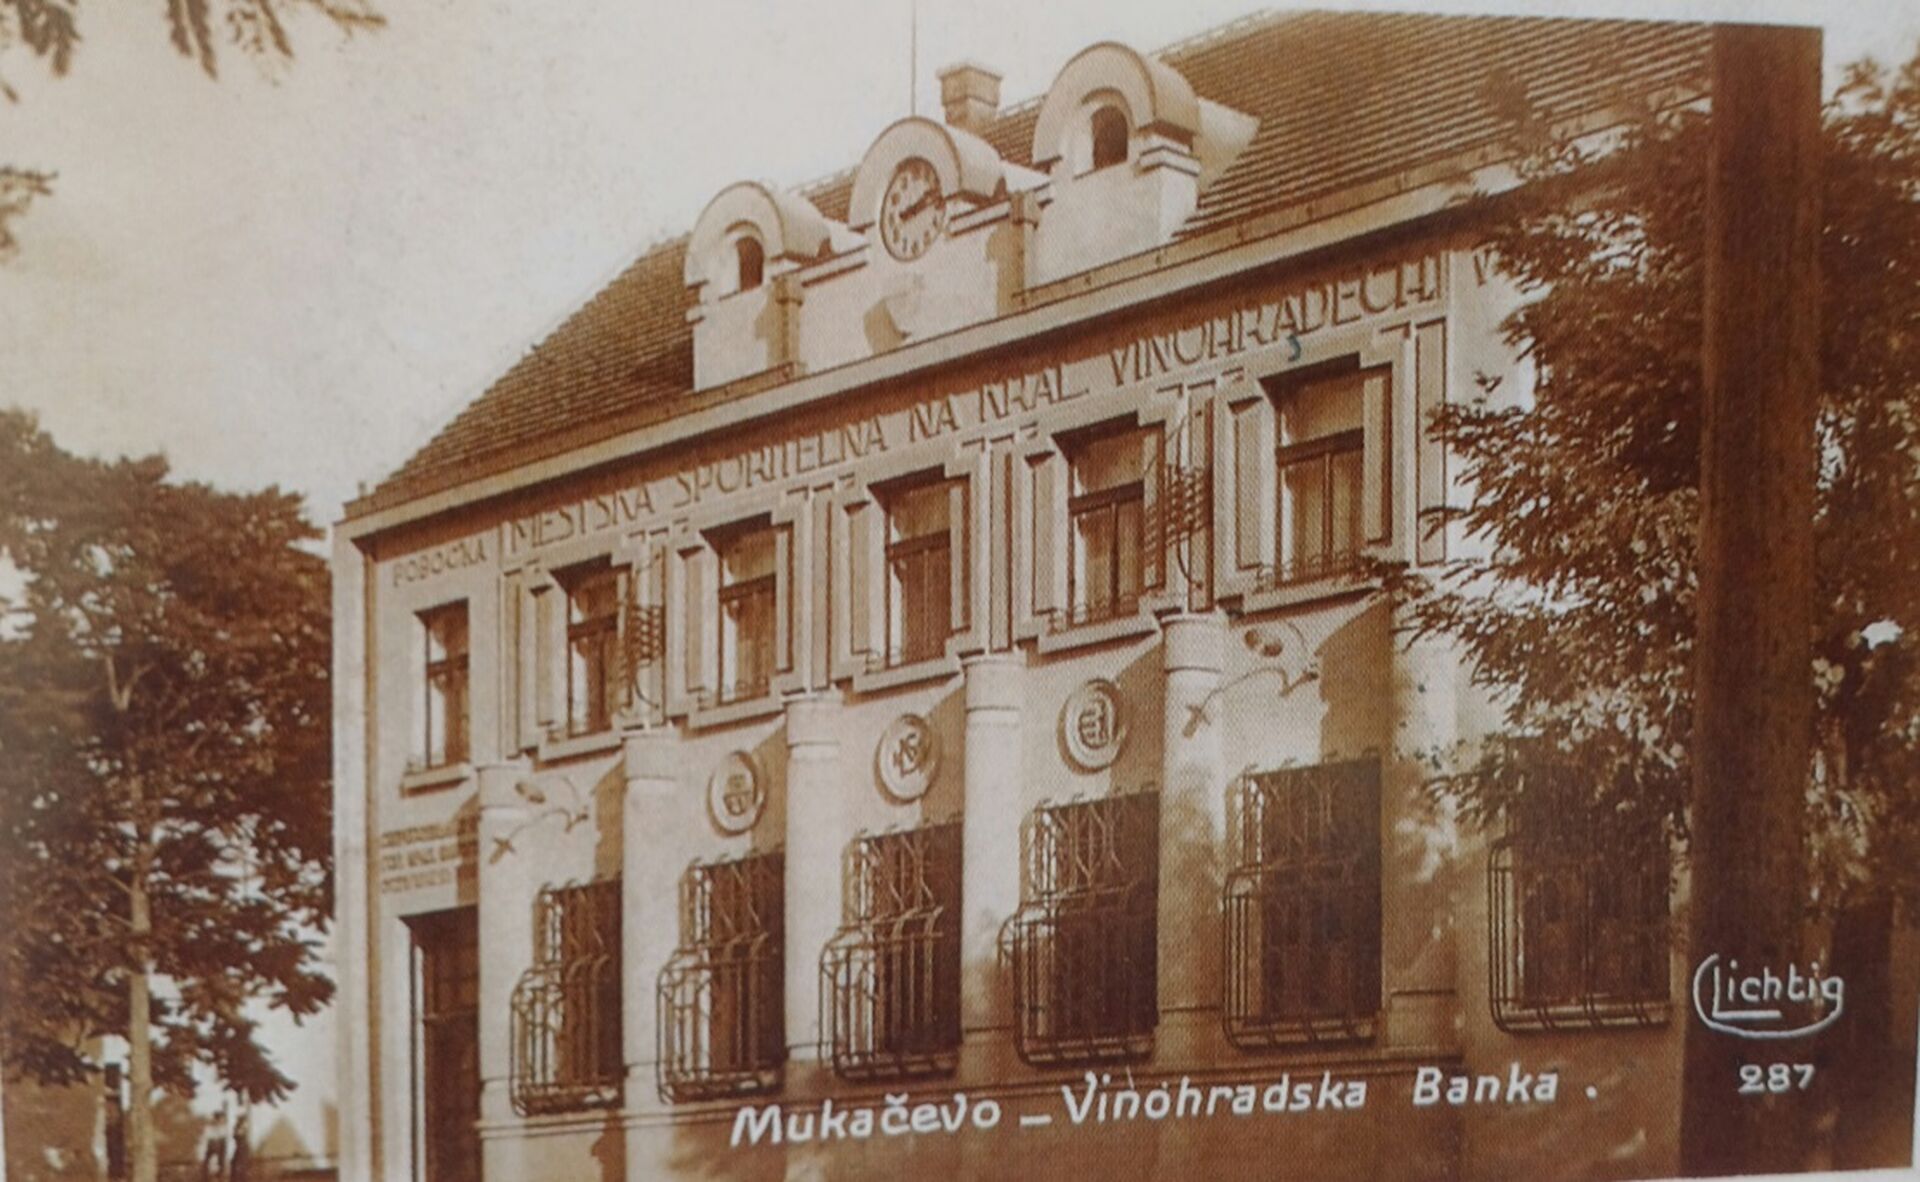 Будівля філіалу ощадного банку на Королівських Виноградах в Мукачеві
